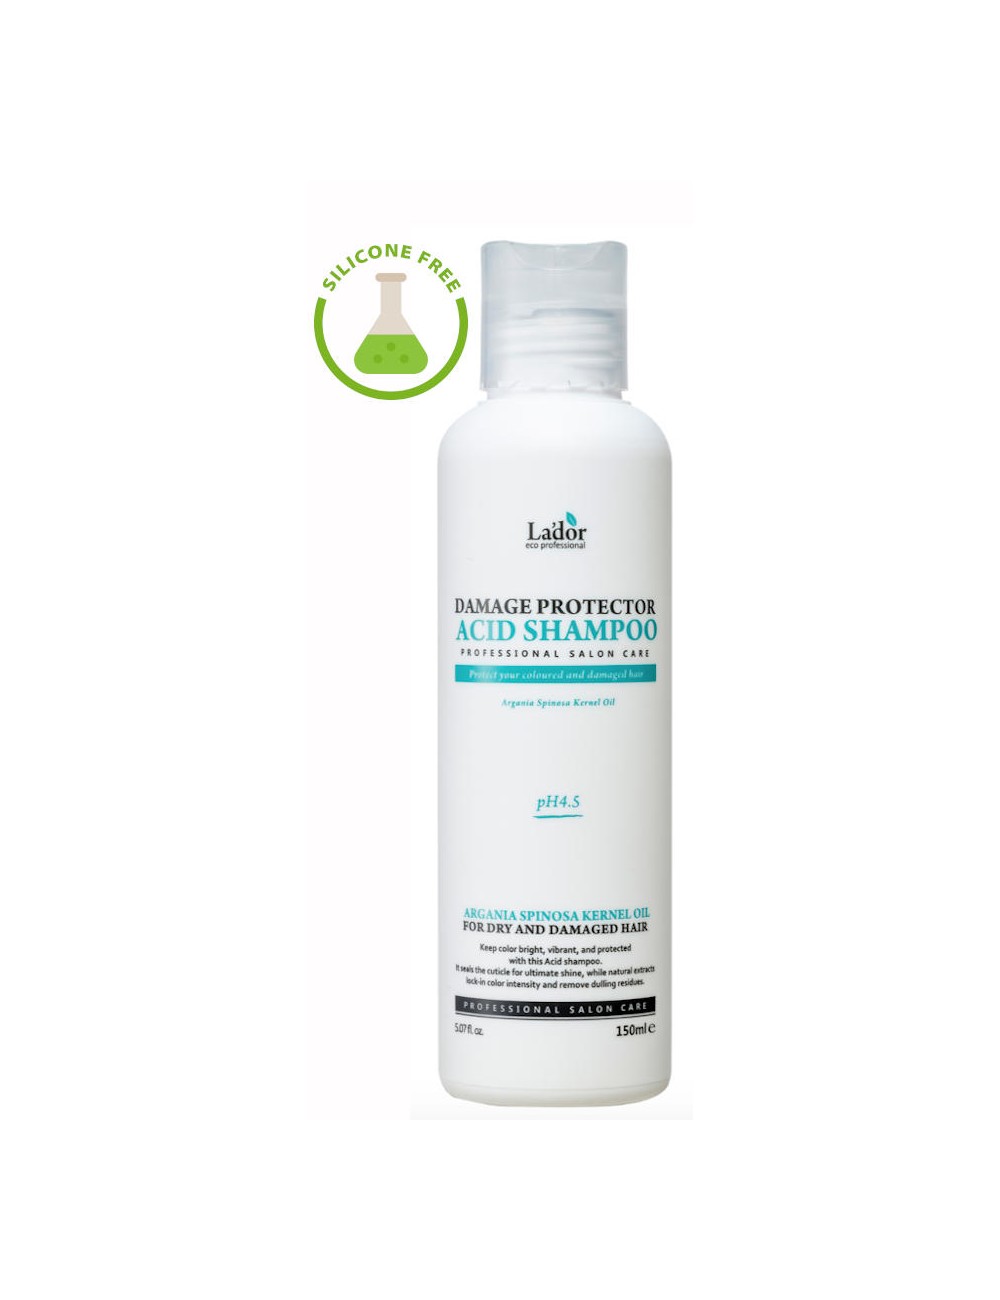 Cabello al mejor precio: La'dor Damage Protector Acid Shampoo 150ml- Pelo teñido, permanentado de Lador Eco Professional en Skin Thinks - 